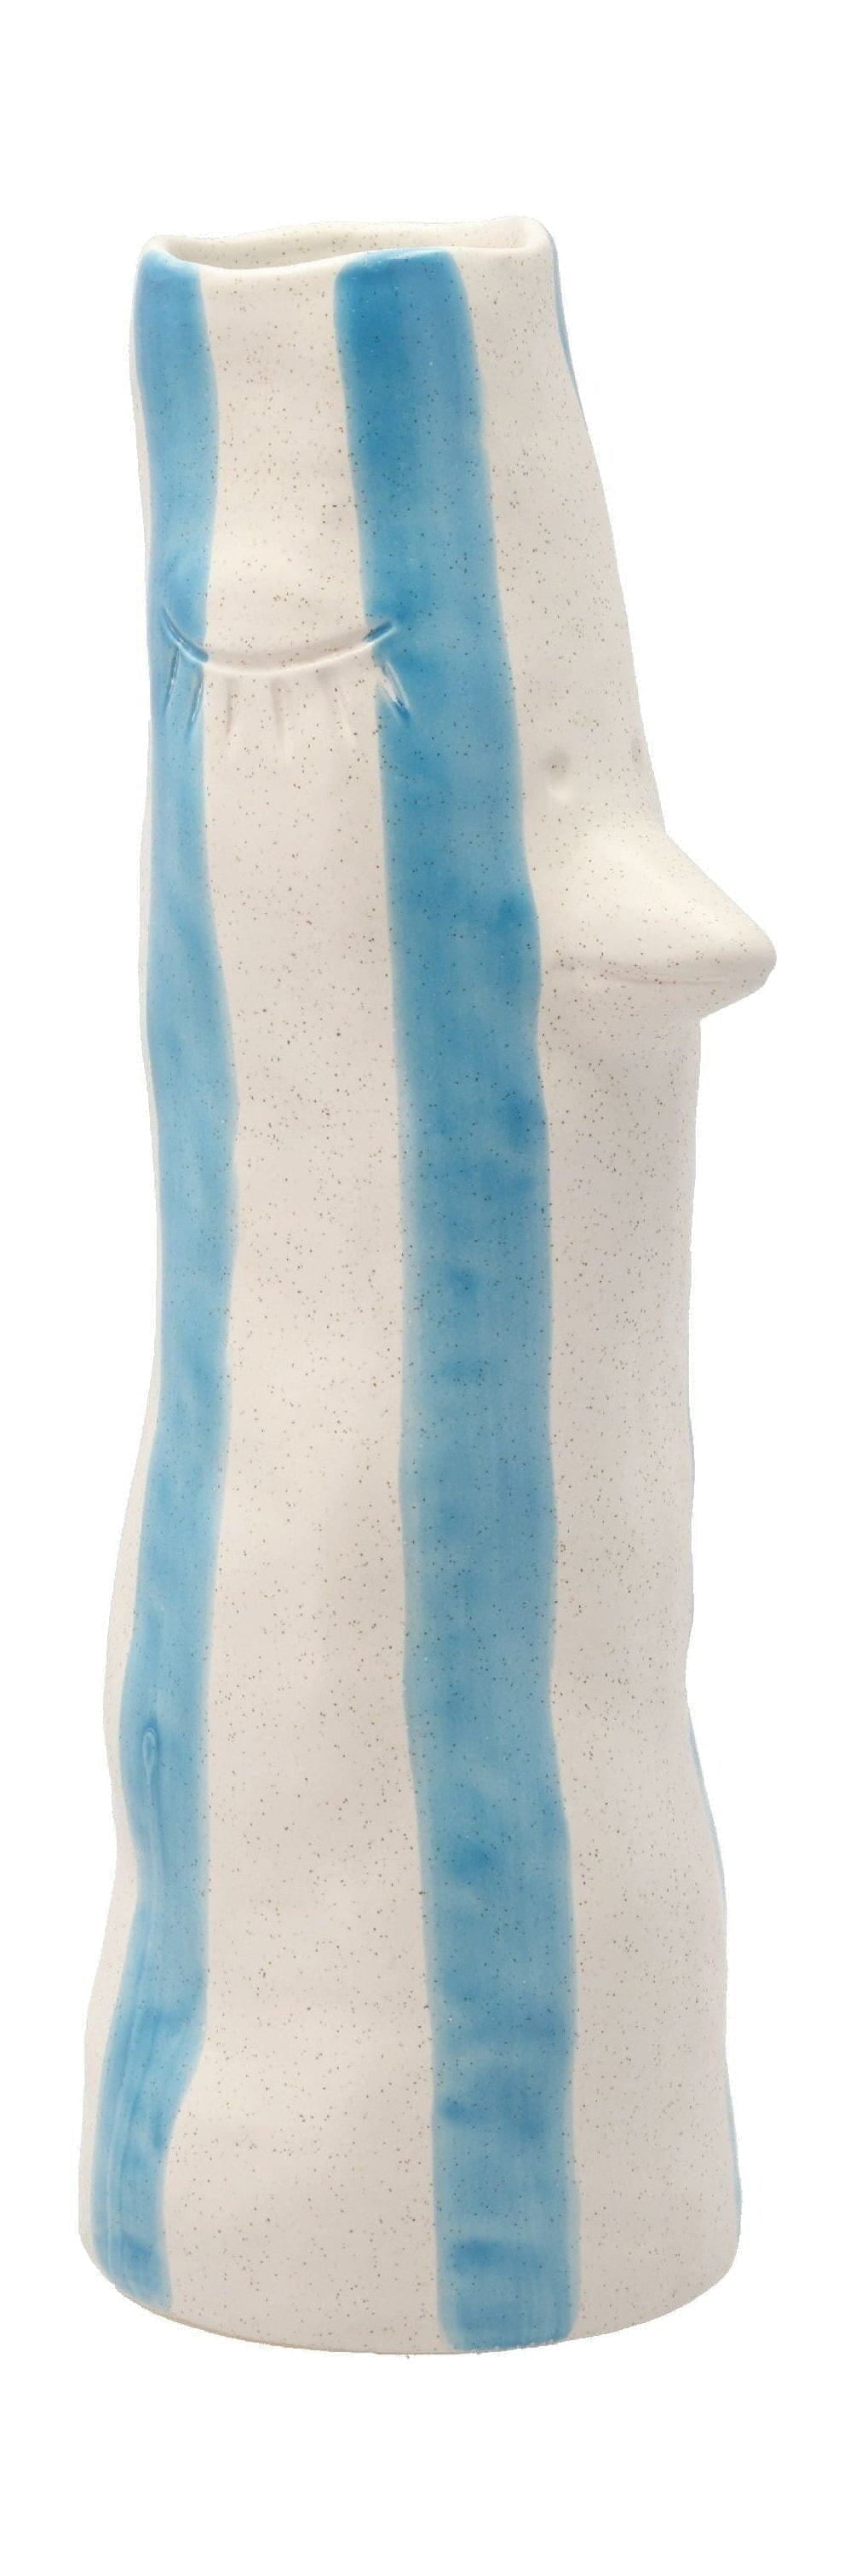 Villa Collection Styles Vase With Beak And Eyelashes Large, Blue